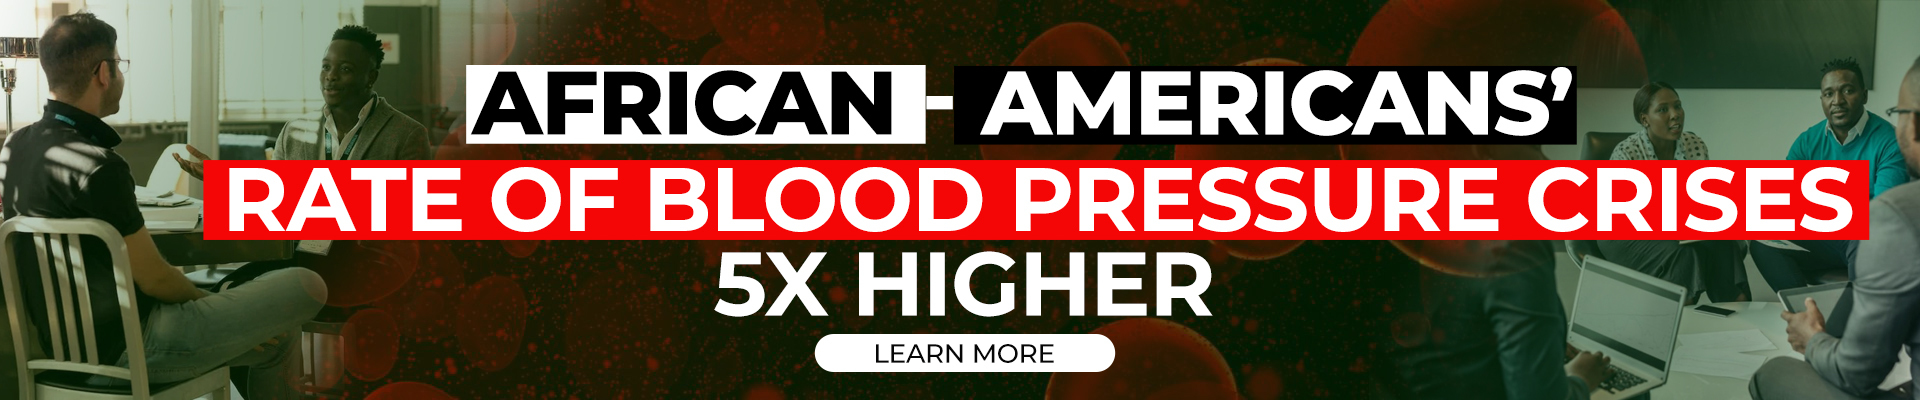 African-American Blood Pressure